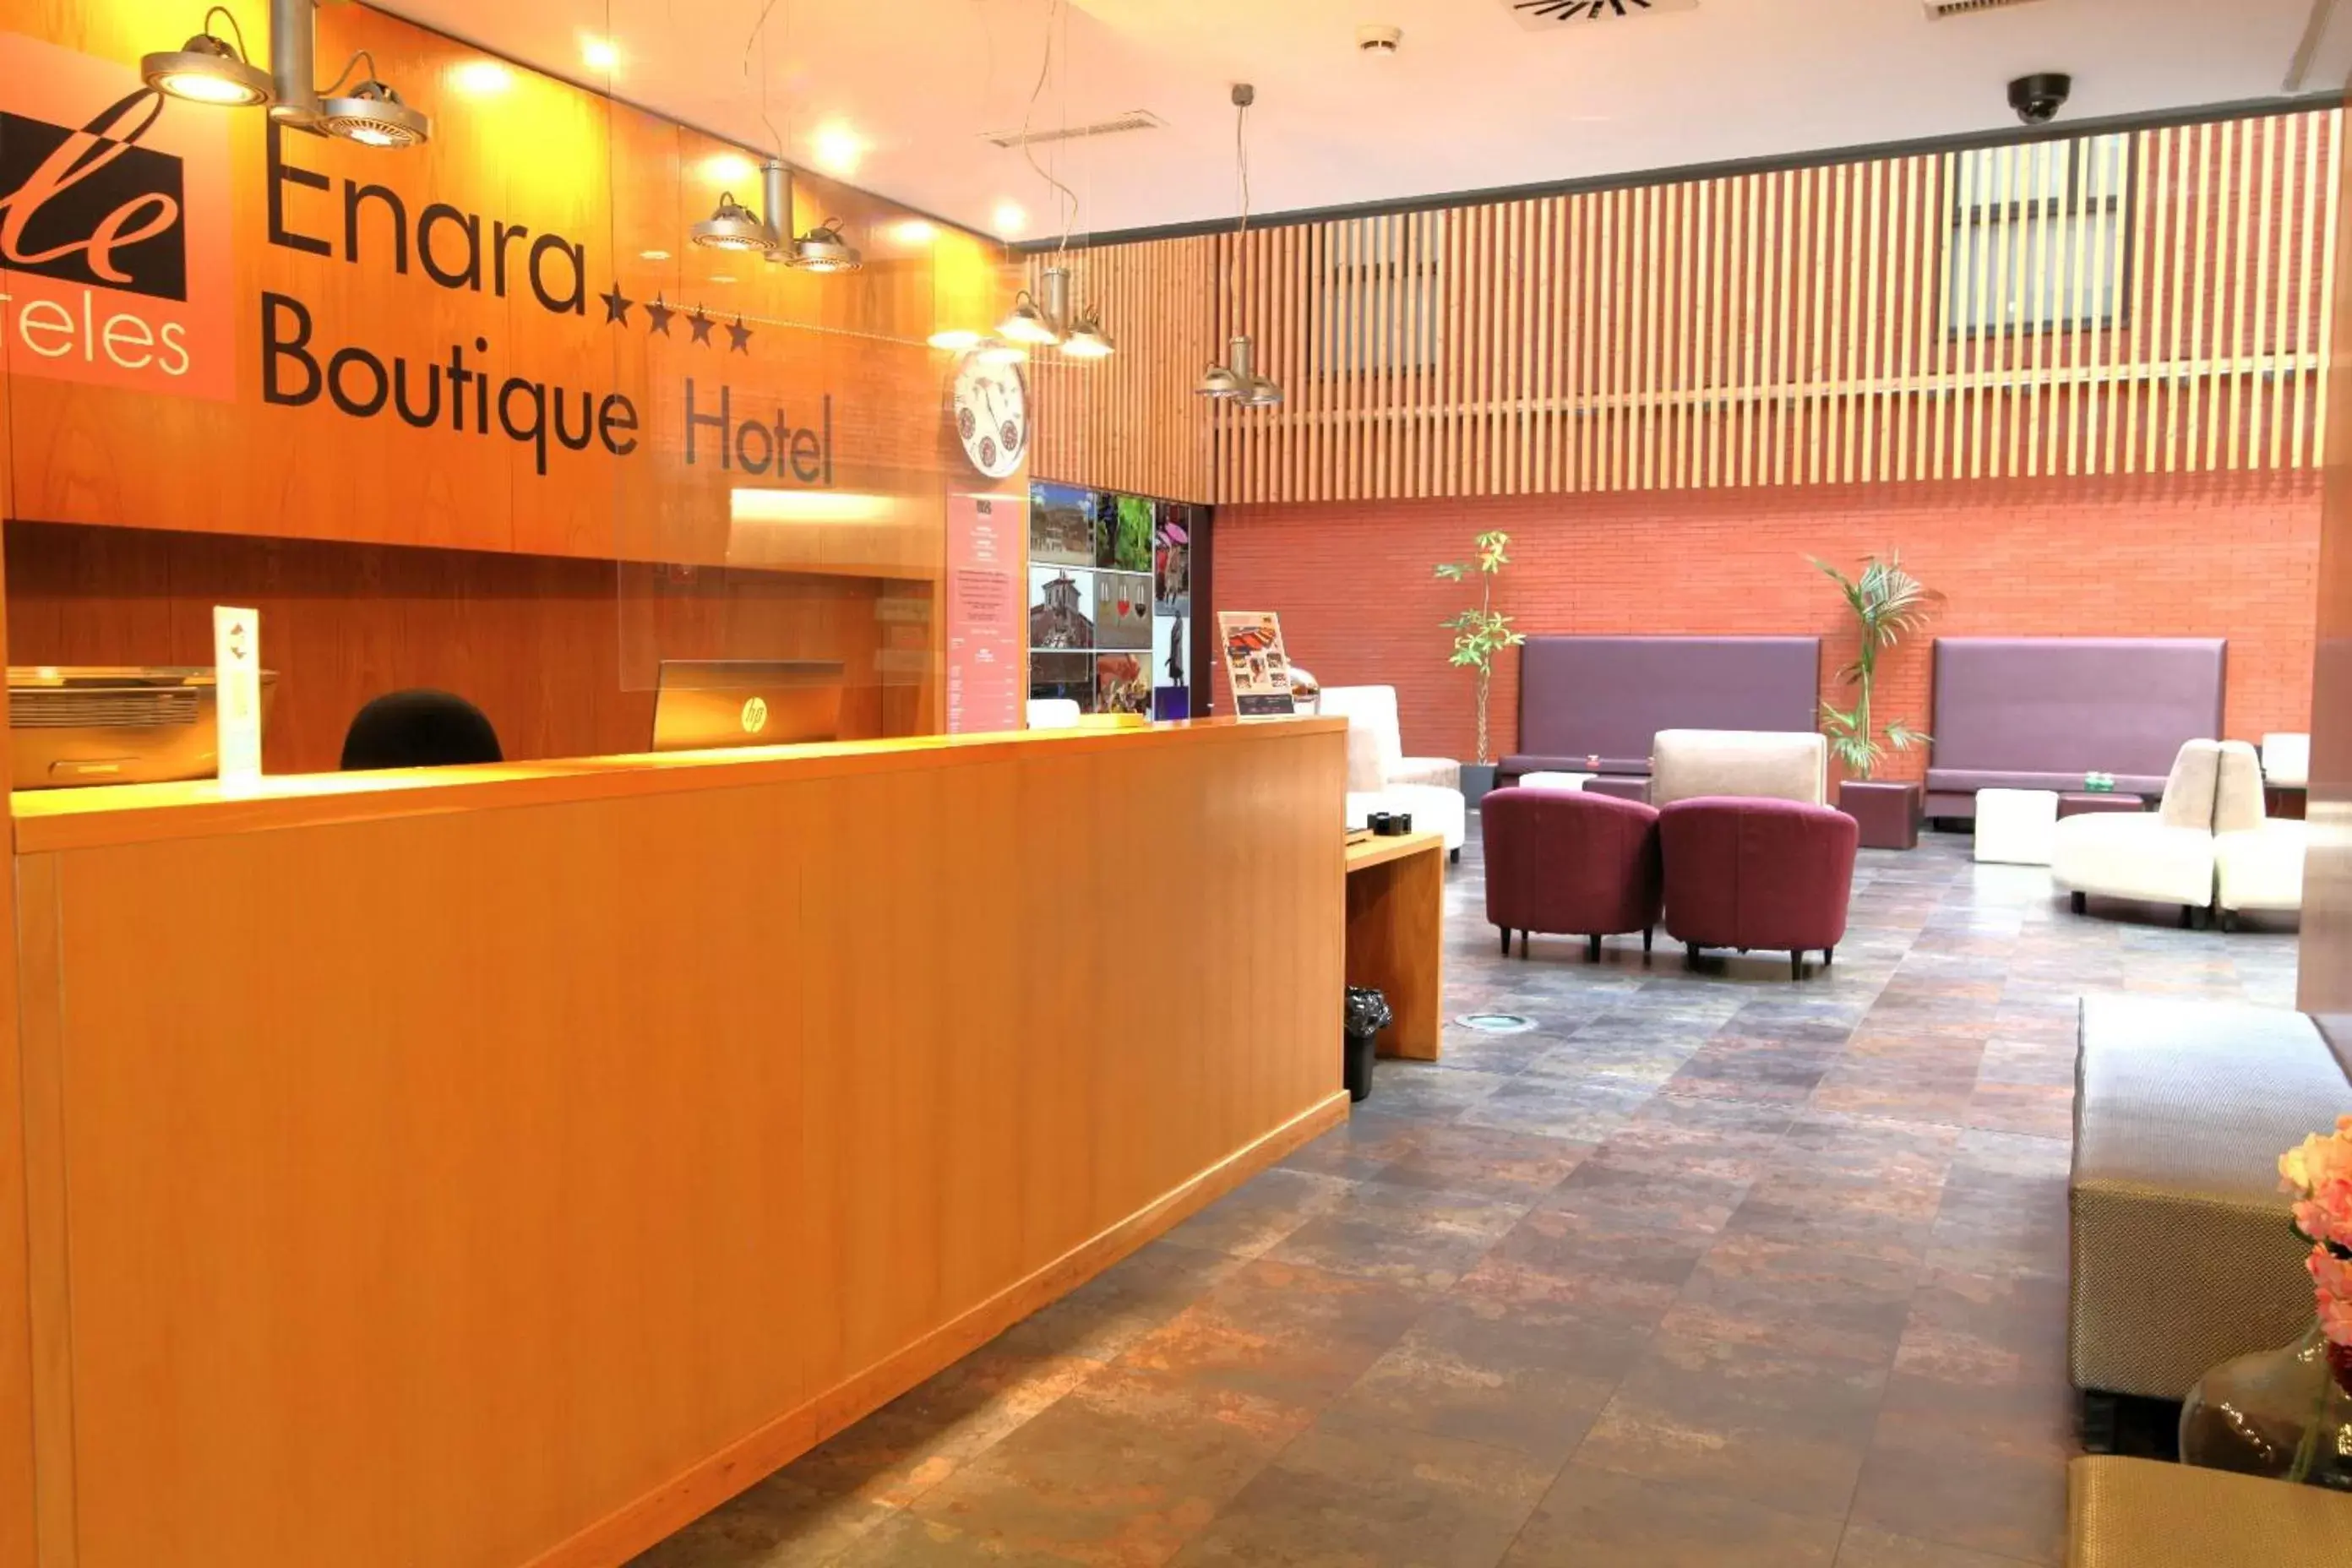 Lobby or reception, Lobby/Reception in ELE Enara Boutique Hotel